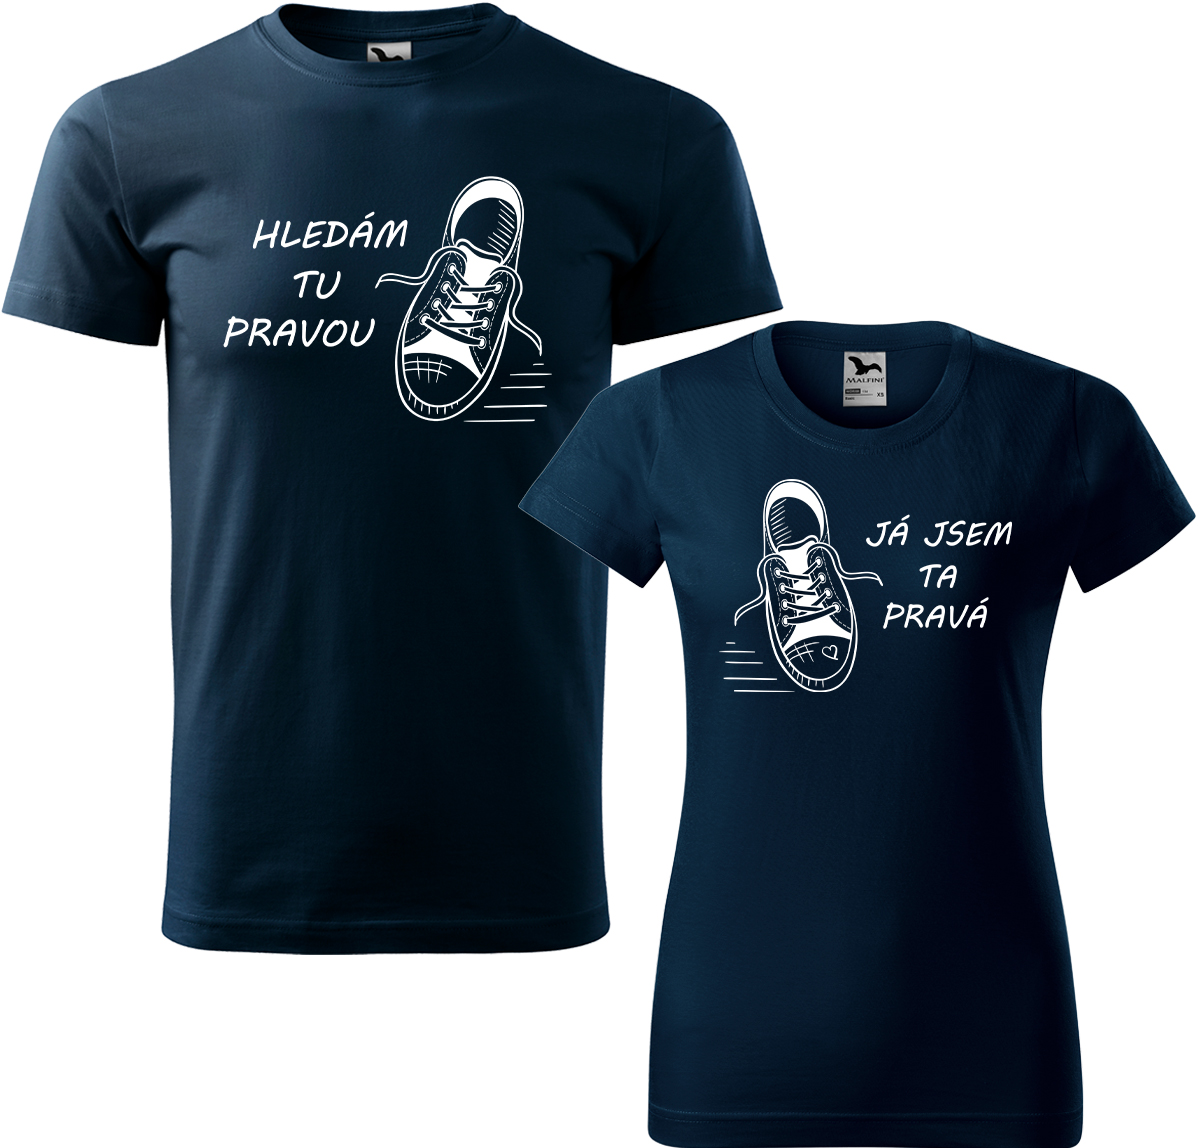 Trička pro páry - Kecky Barva: Námořní modrá (02), Velikost dámské tričko: S, Velikost pánské tričko: 3XL